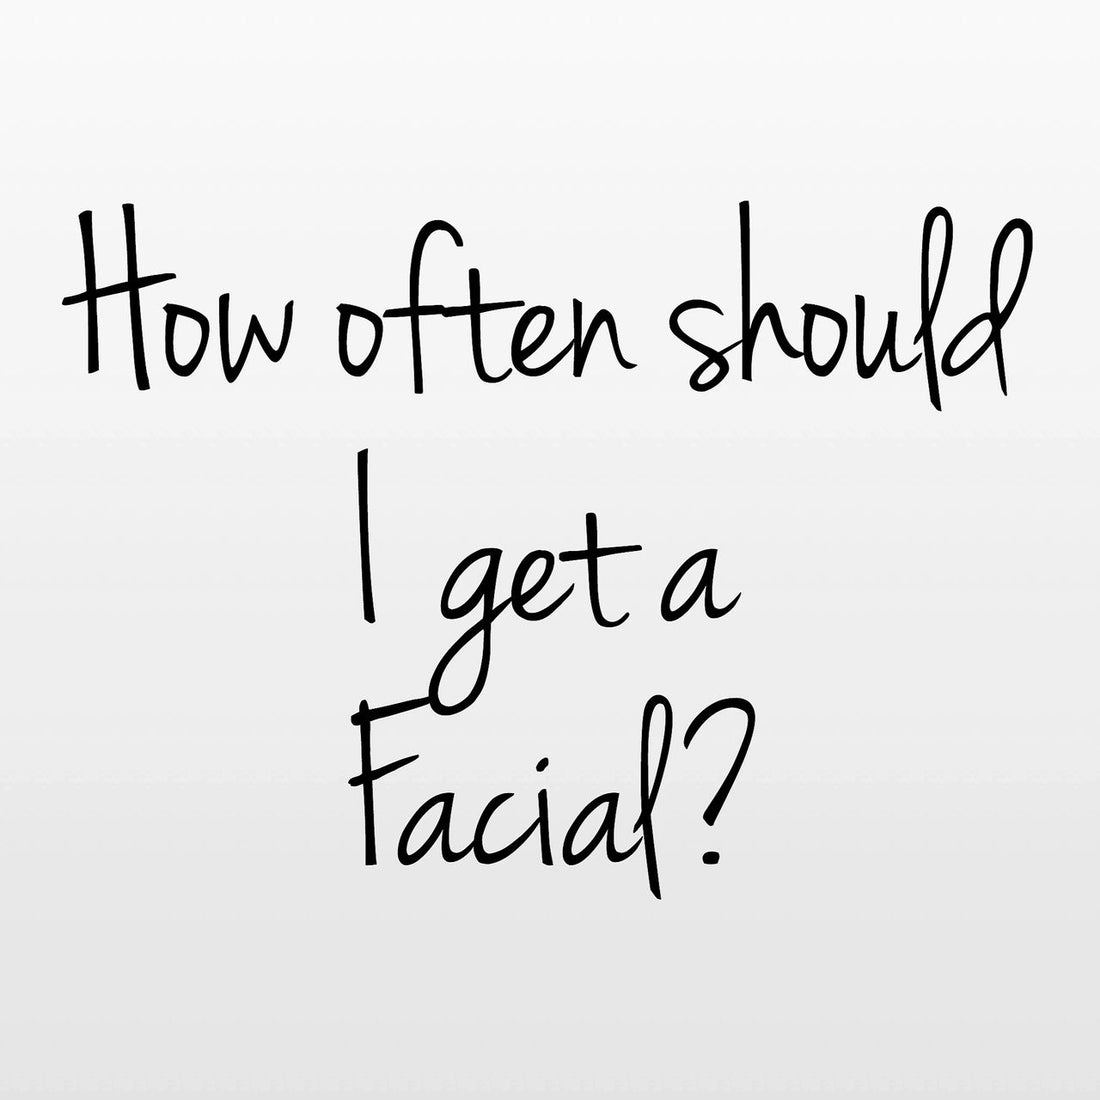 How often should I get a facial?